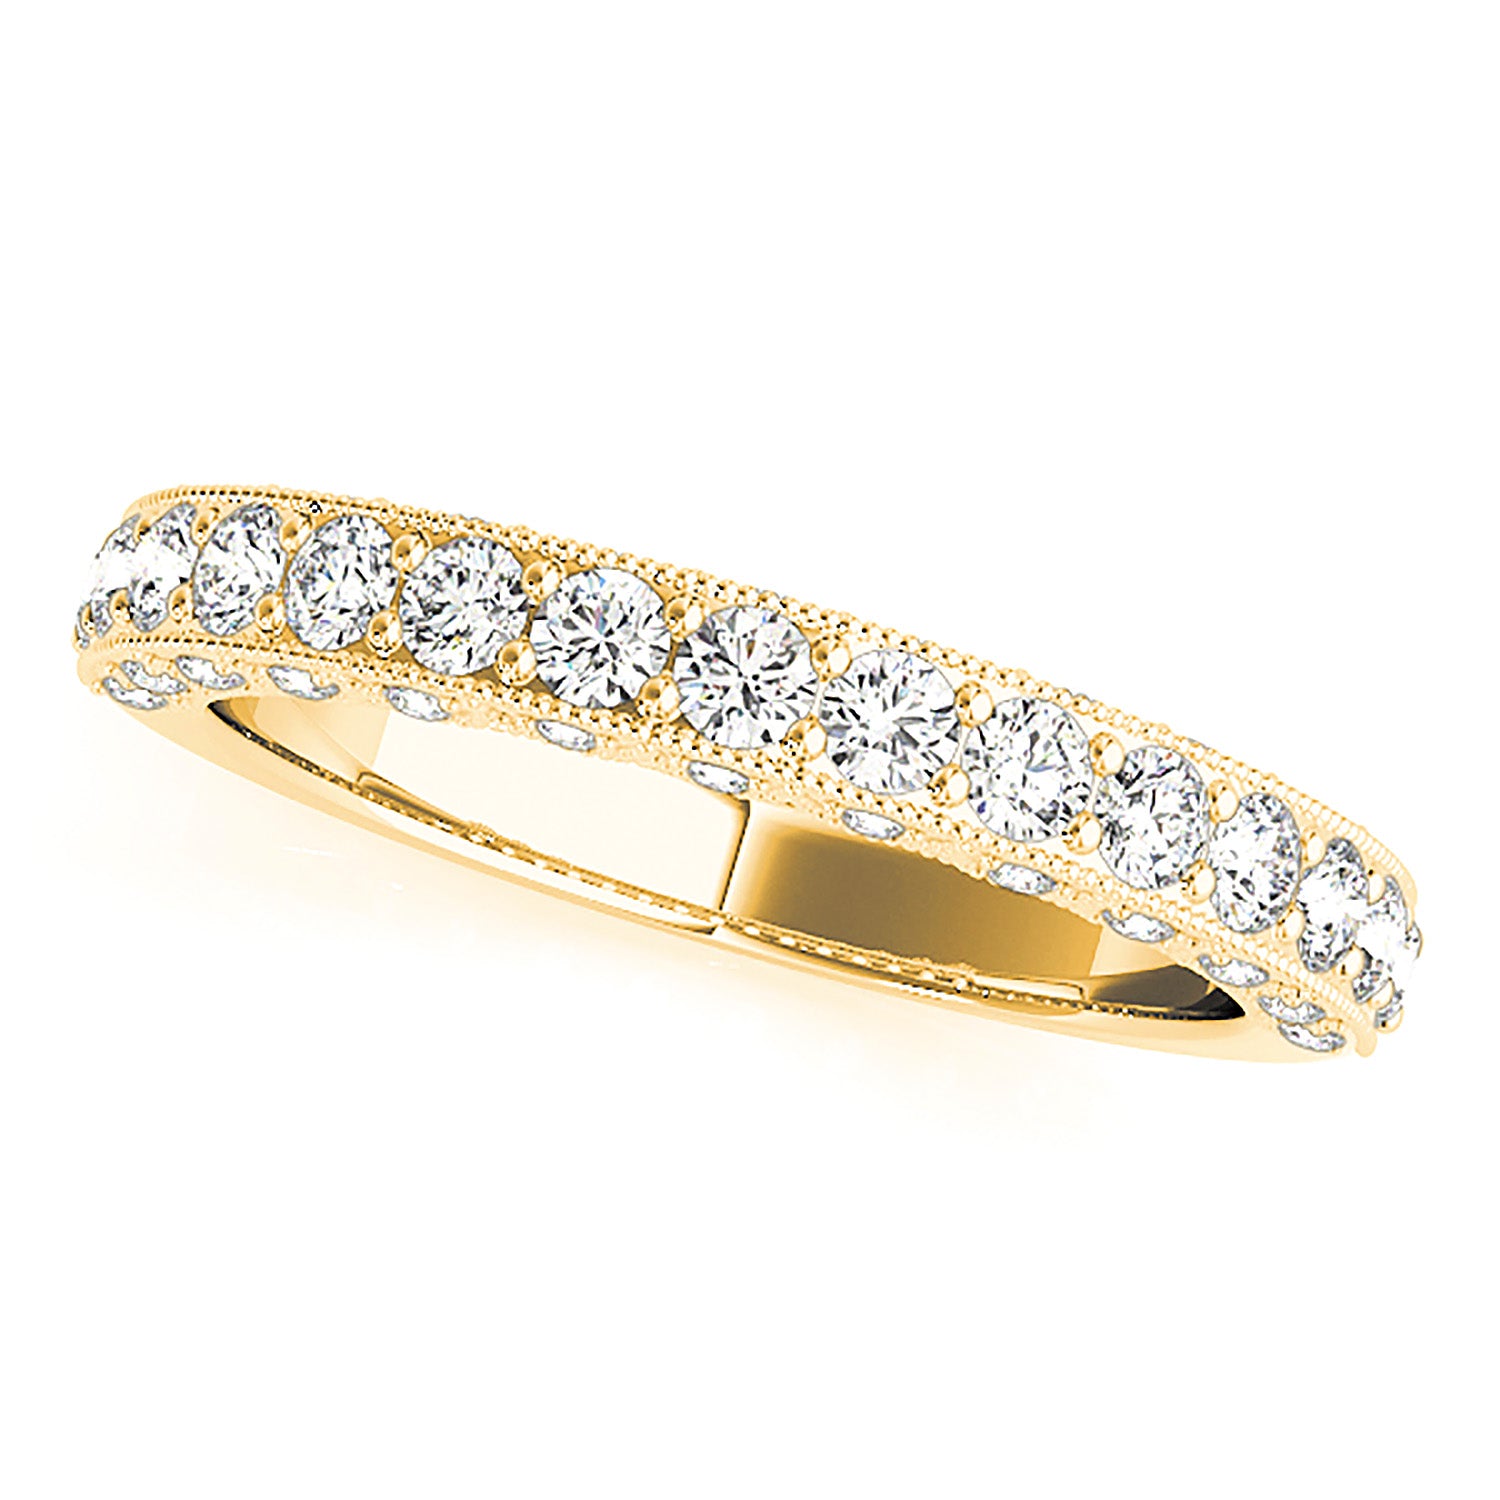 Diamond Wedding Band - 14K/18k Solid White Gold / Platinum | Prong Set Diamond Anniversary Ring | Milgrain Design-in 14K/18K White, Yellow, Rose Gold and Platinum - Christmas Jewelry Gift -VIRABYANI